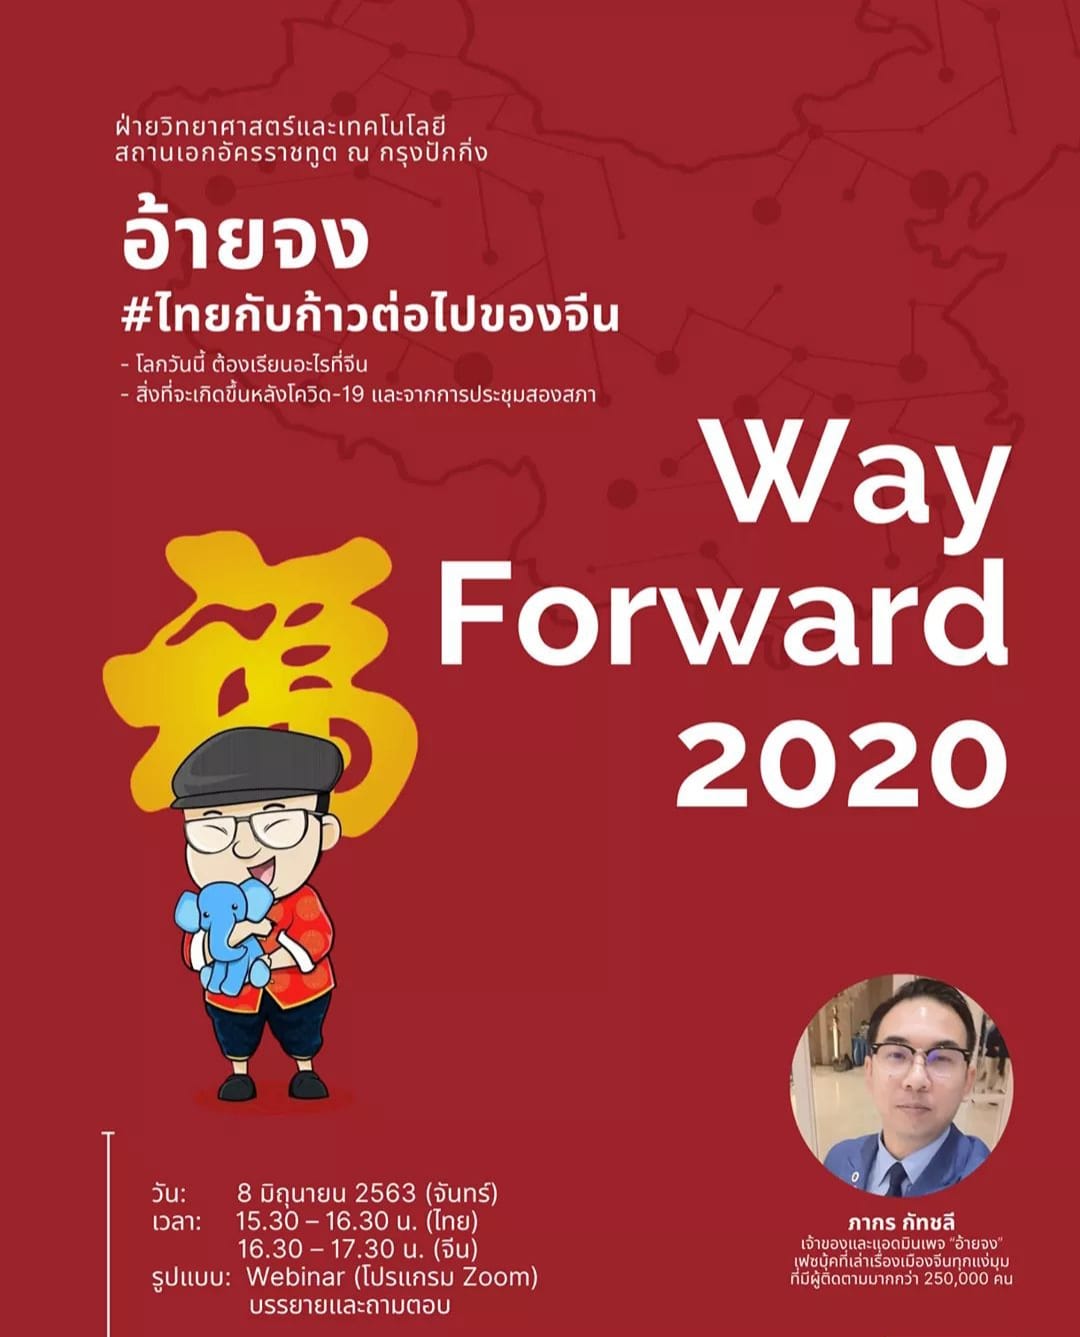 Way Forward 2020 ครั้งที่ 3 : อ้ายจง #ไทยกับก้าวต่อไปของจีน